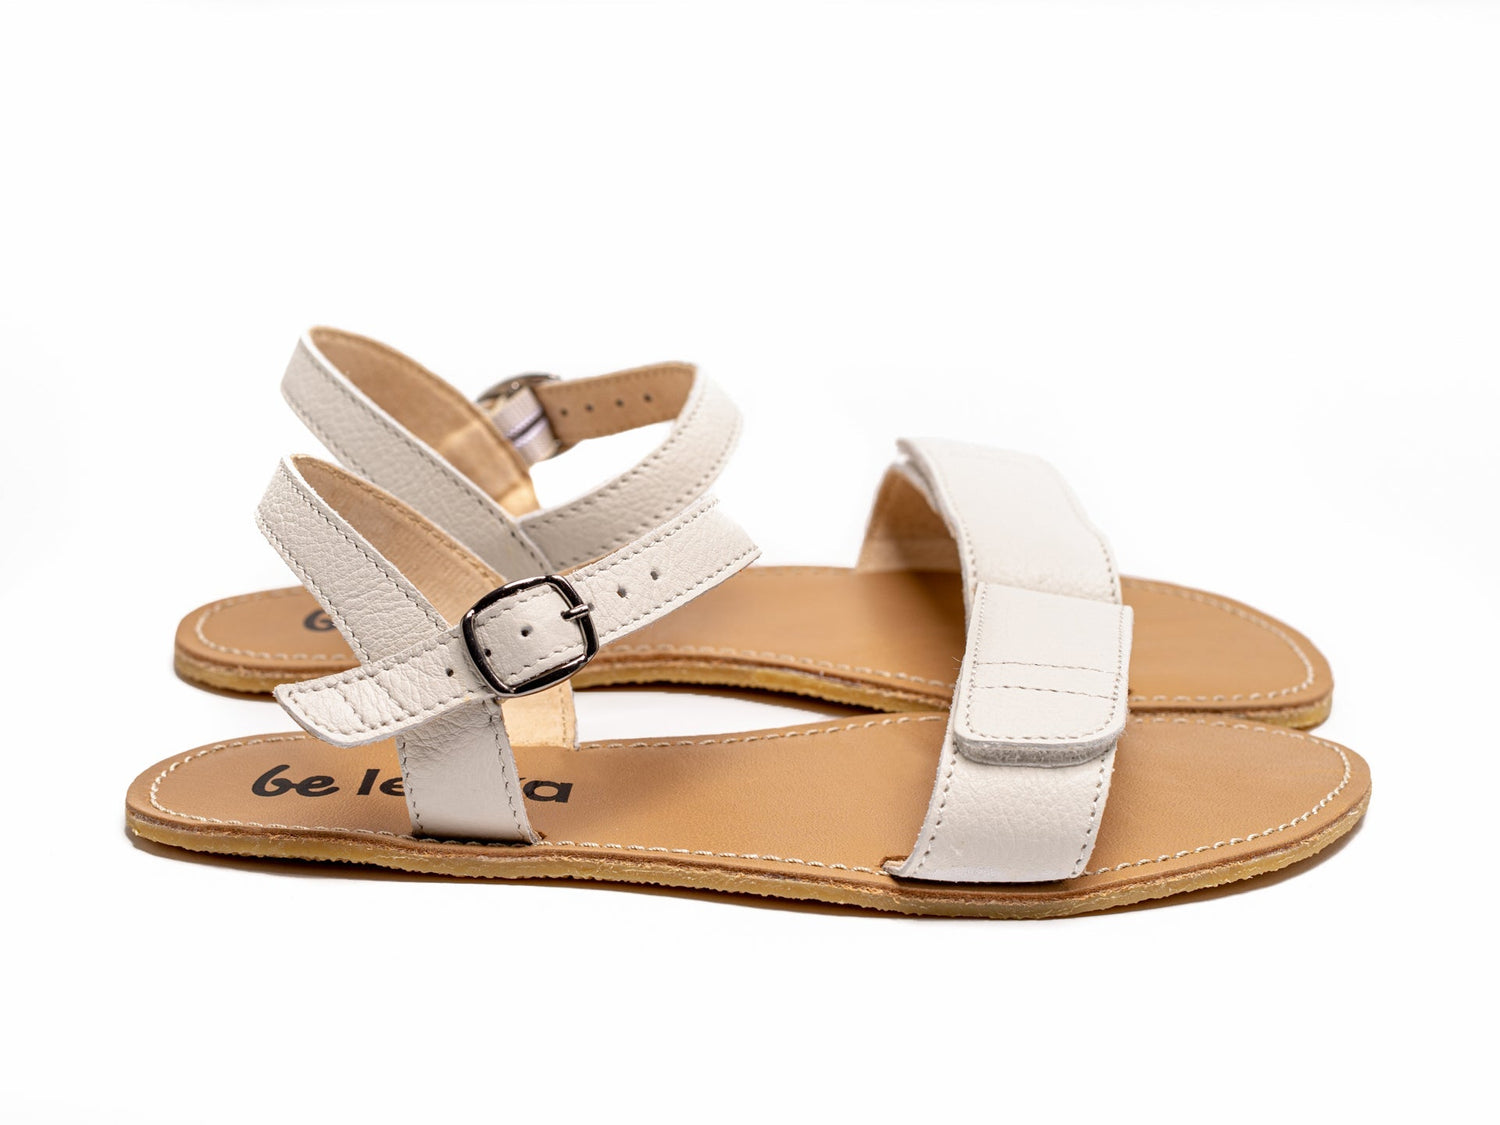 Barefoot Sandals - Be Lenka Grace - Ivory White-Be Lenka-Cacles Barefoot